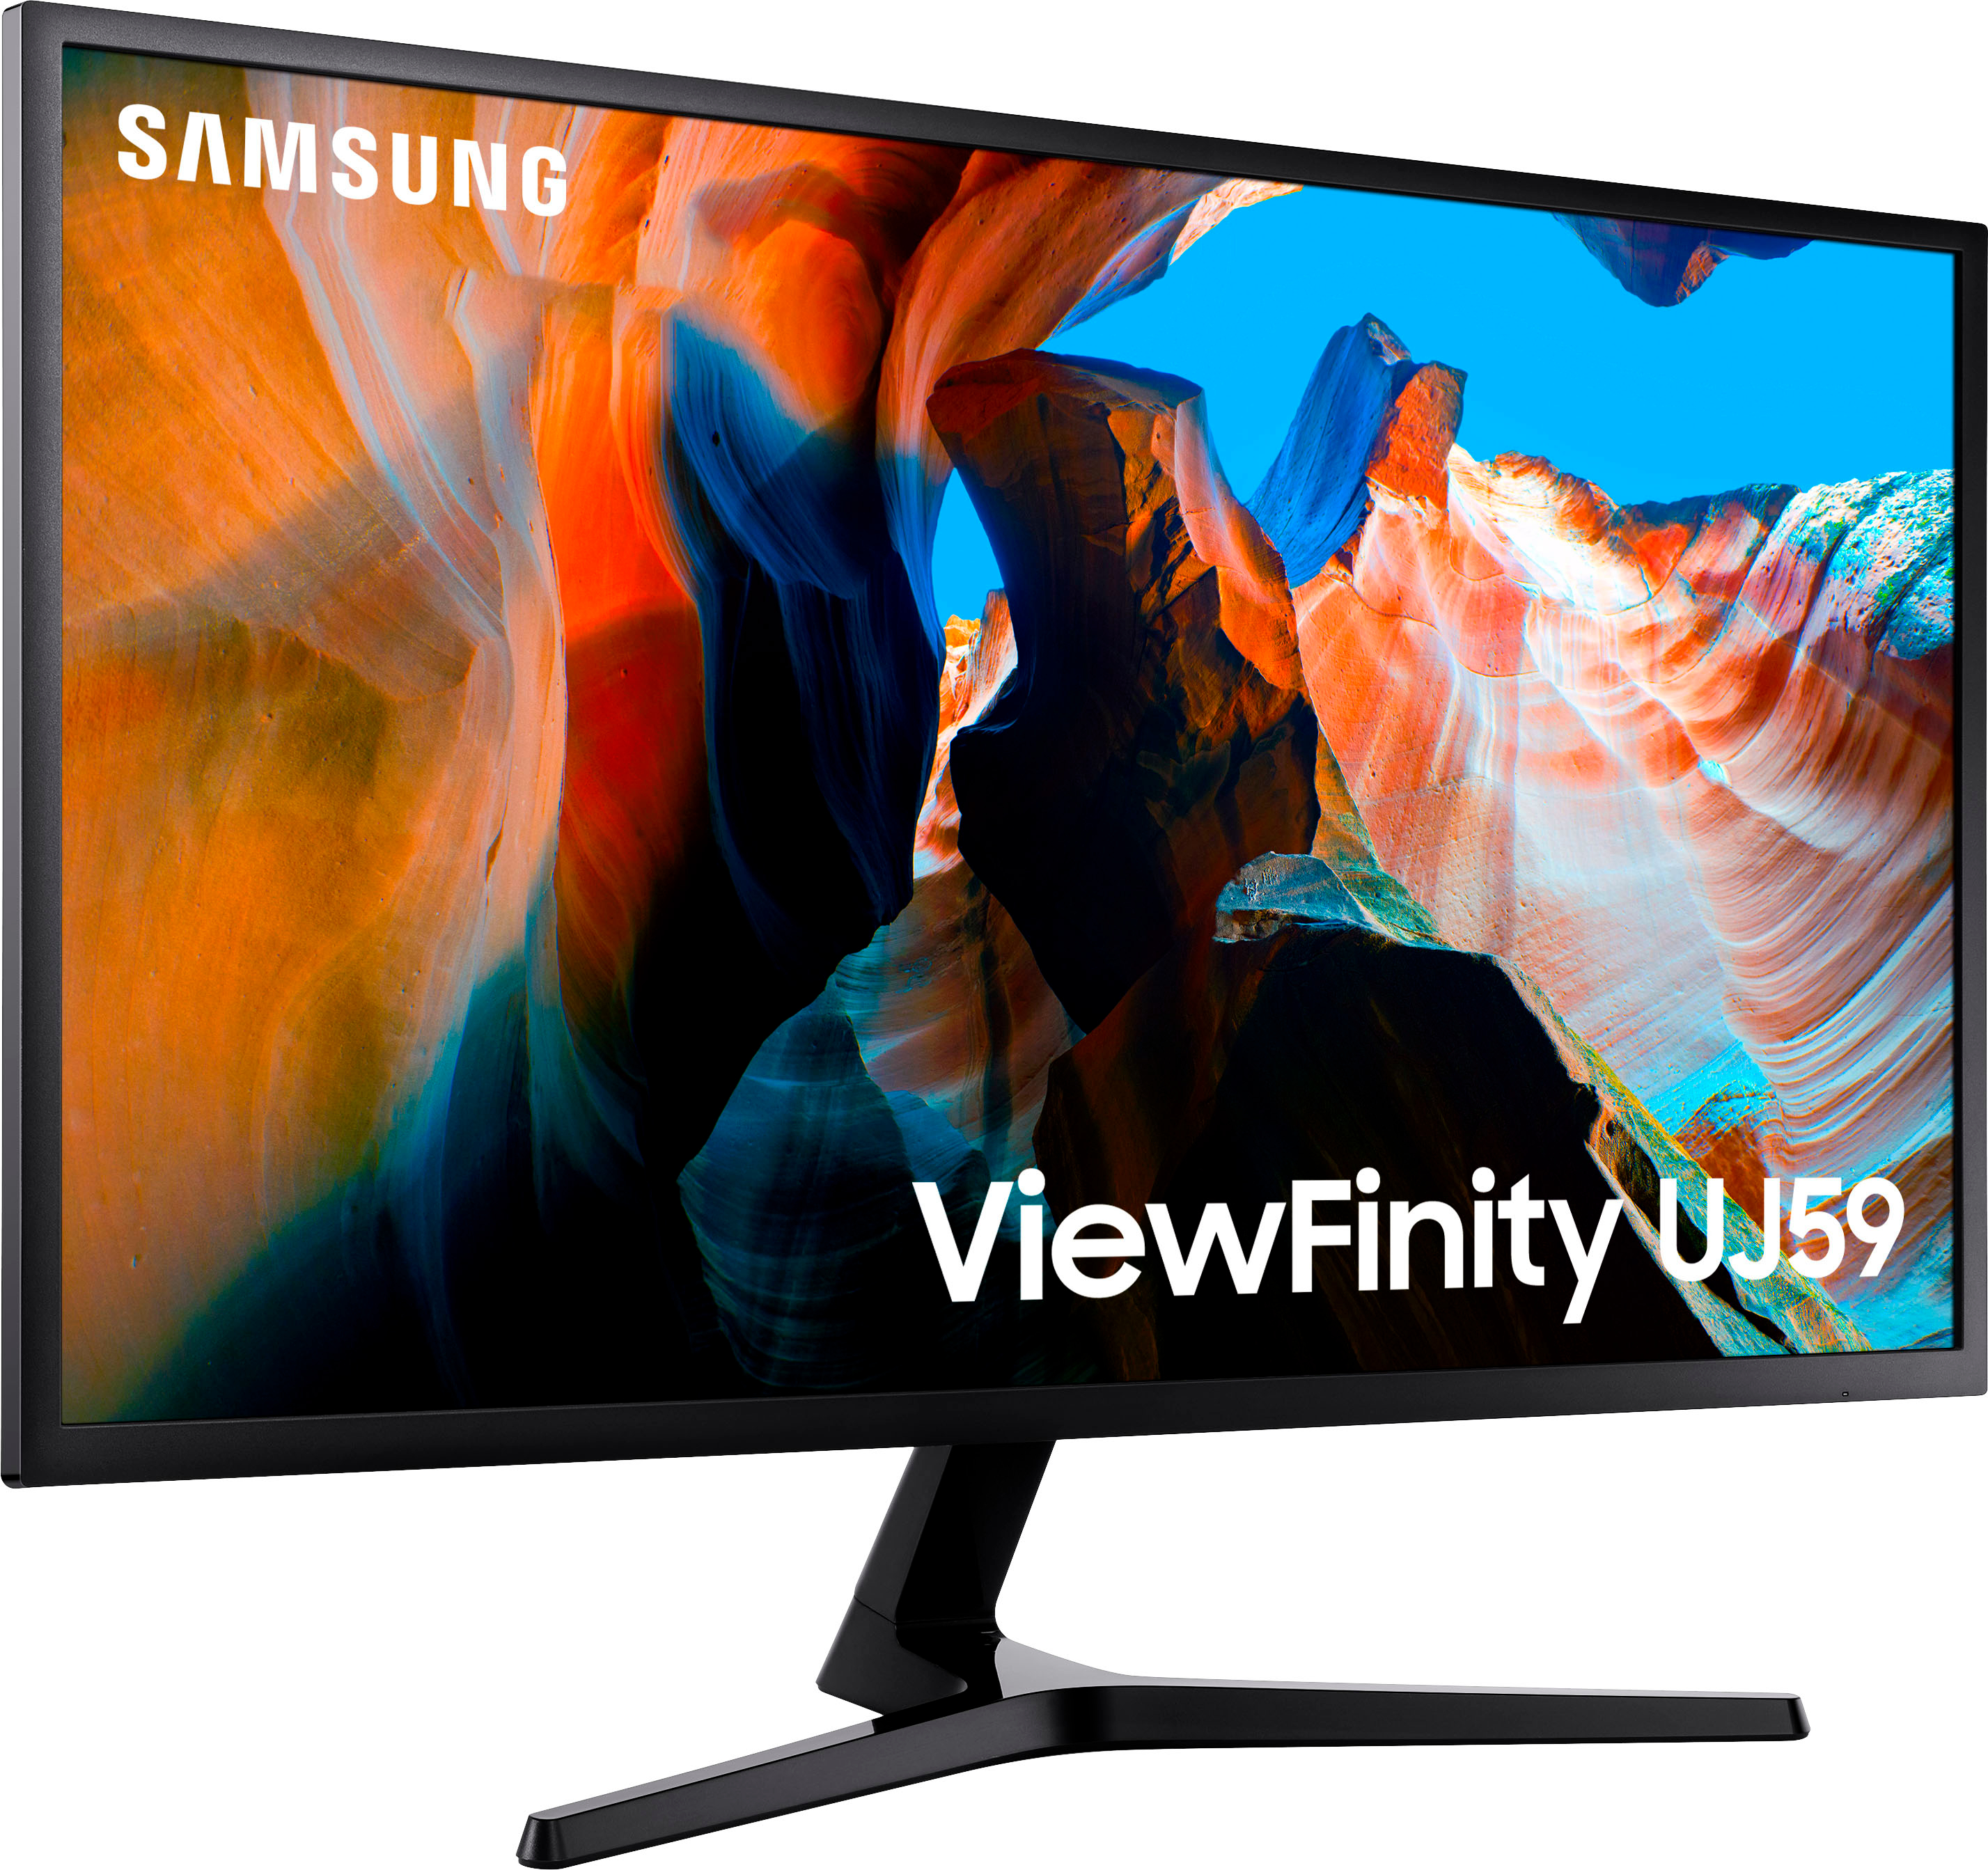 Left View: Samsung - UJ59 Series U32J590UQN 32" LED 4K UHD FreeSync Monitor (DisplayPort, HDMI) - Dark Gray/Blue